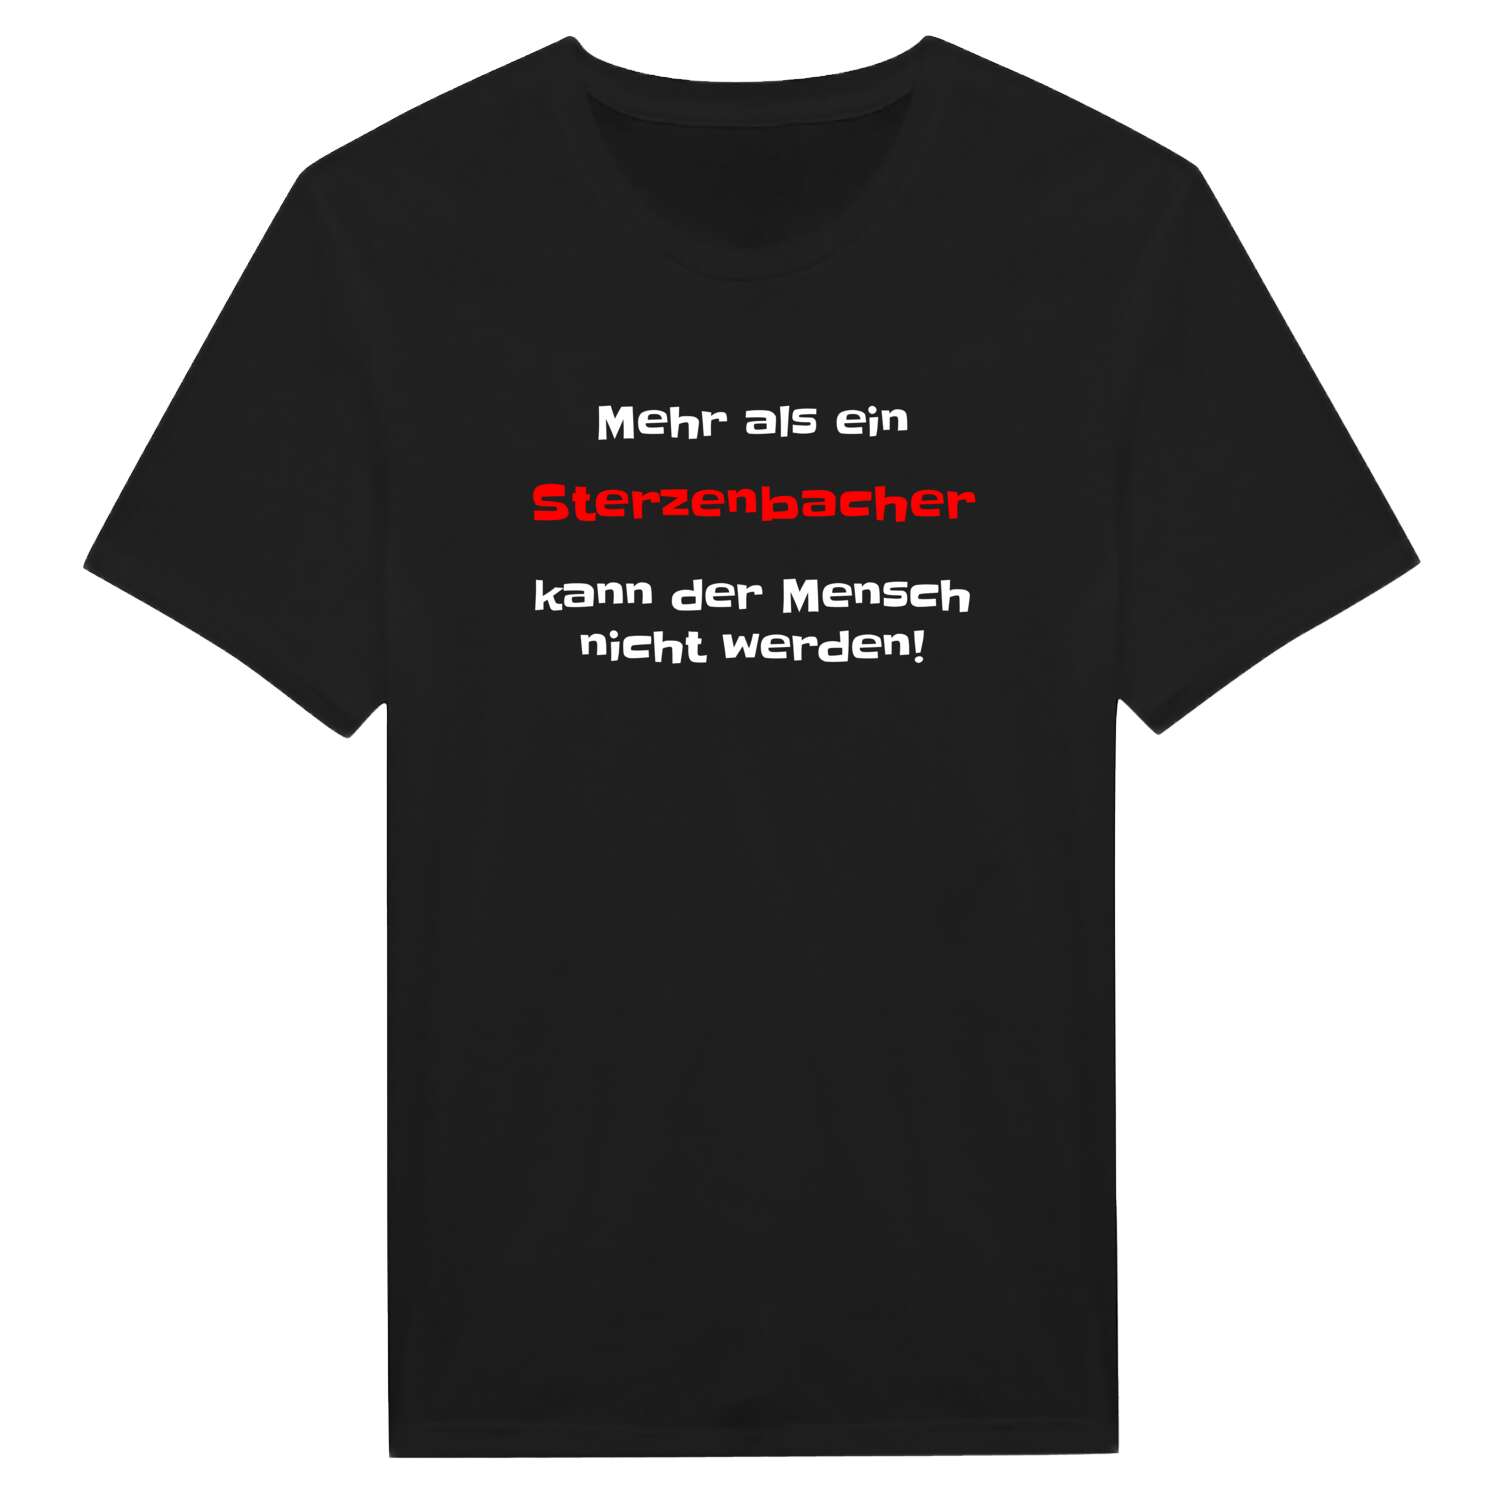 Sterzenbach T-Shirt »Mehr als ein«